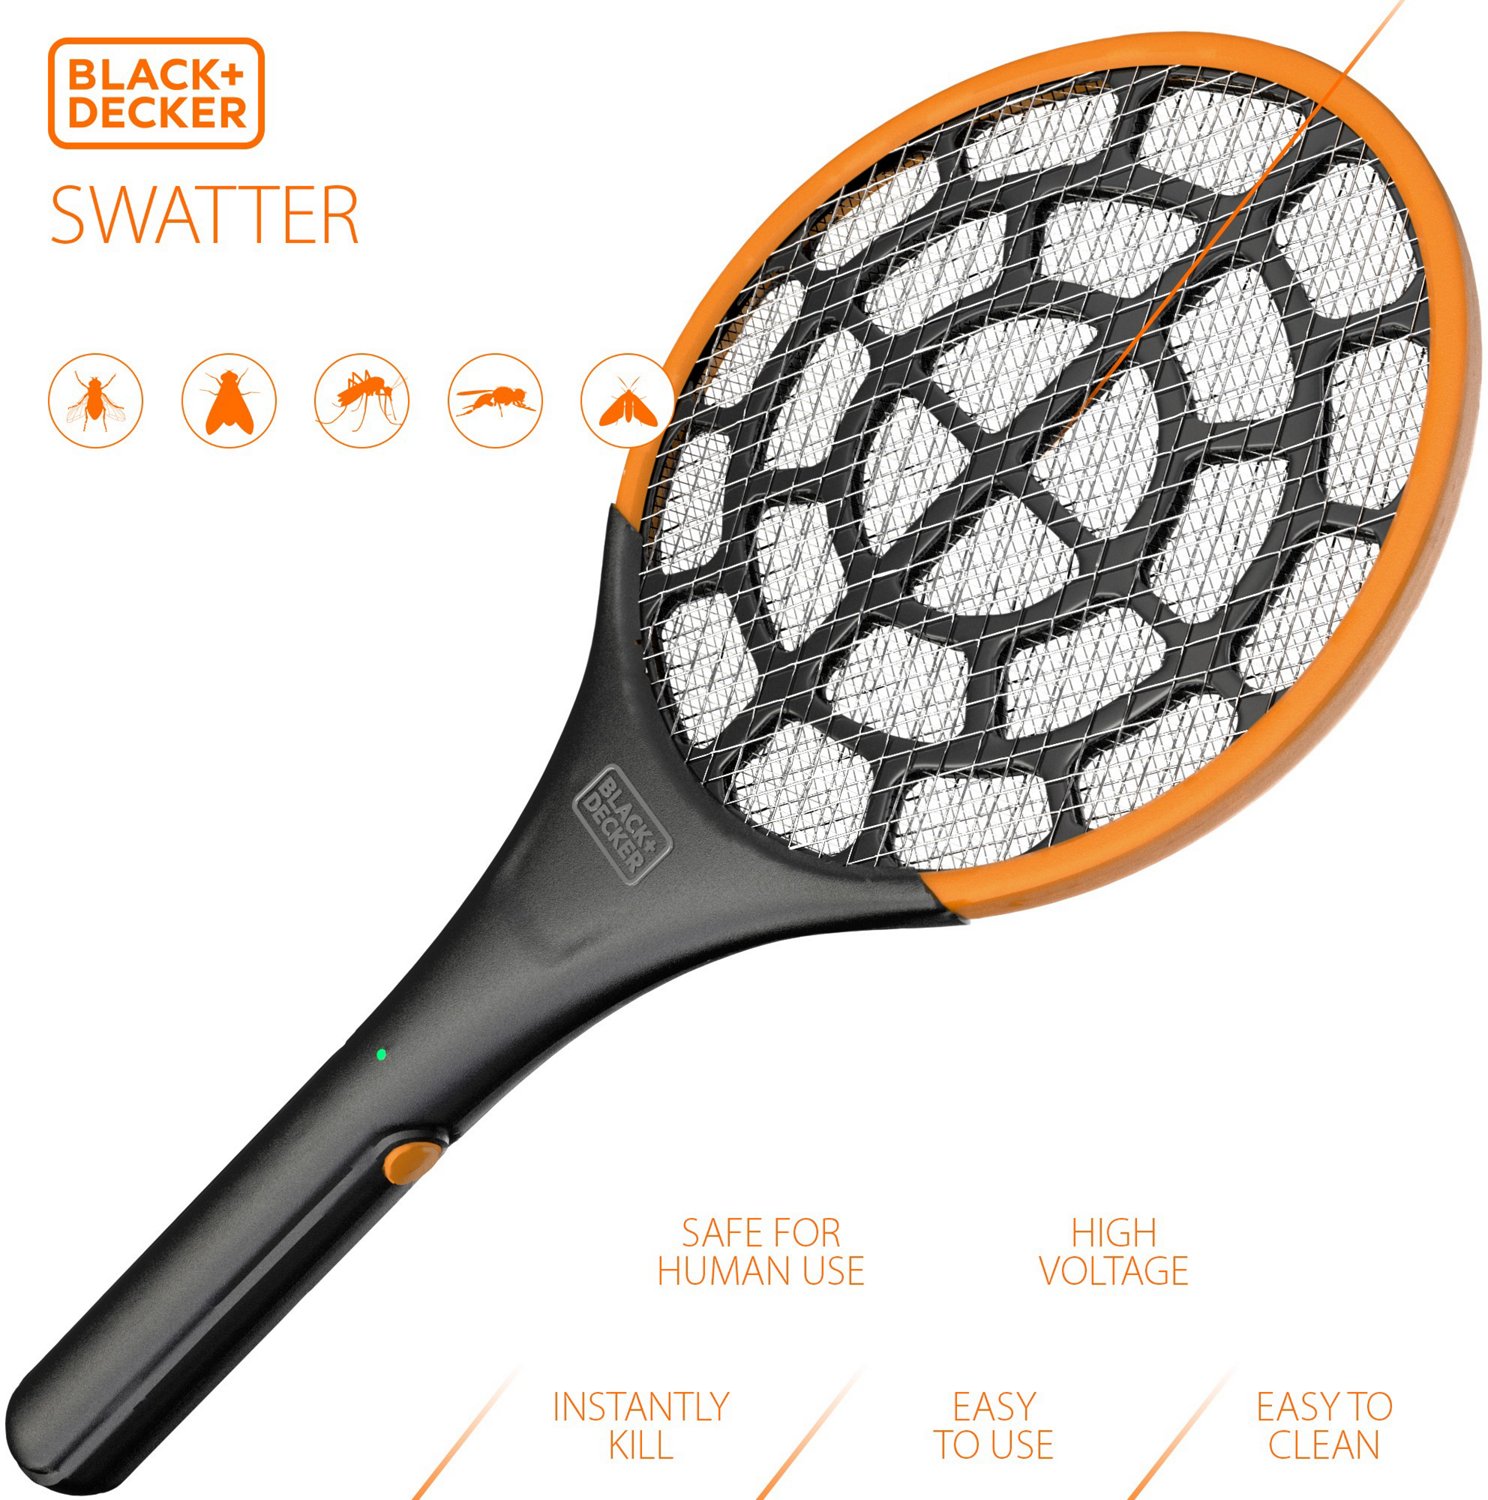 Black & Decker Indoor/Outdoor Battery-Powered Electric Fly Swatter